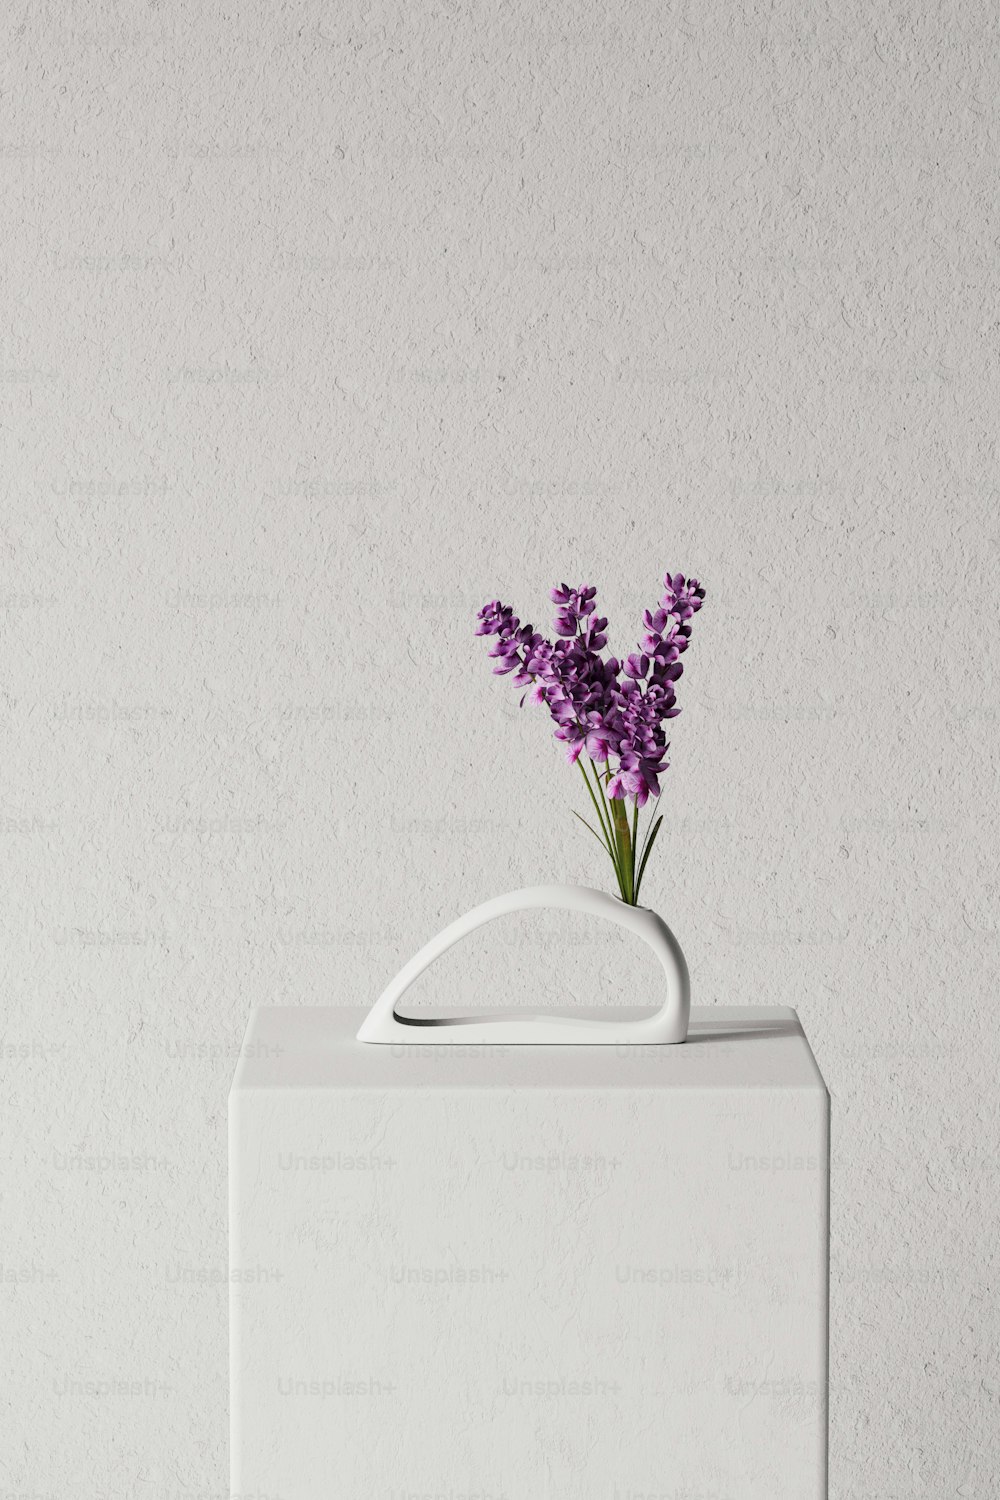 um vaso branco com flores roxas nele